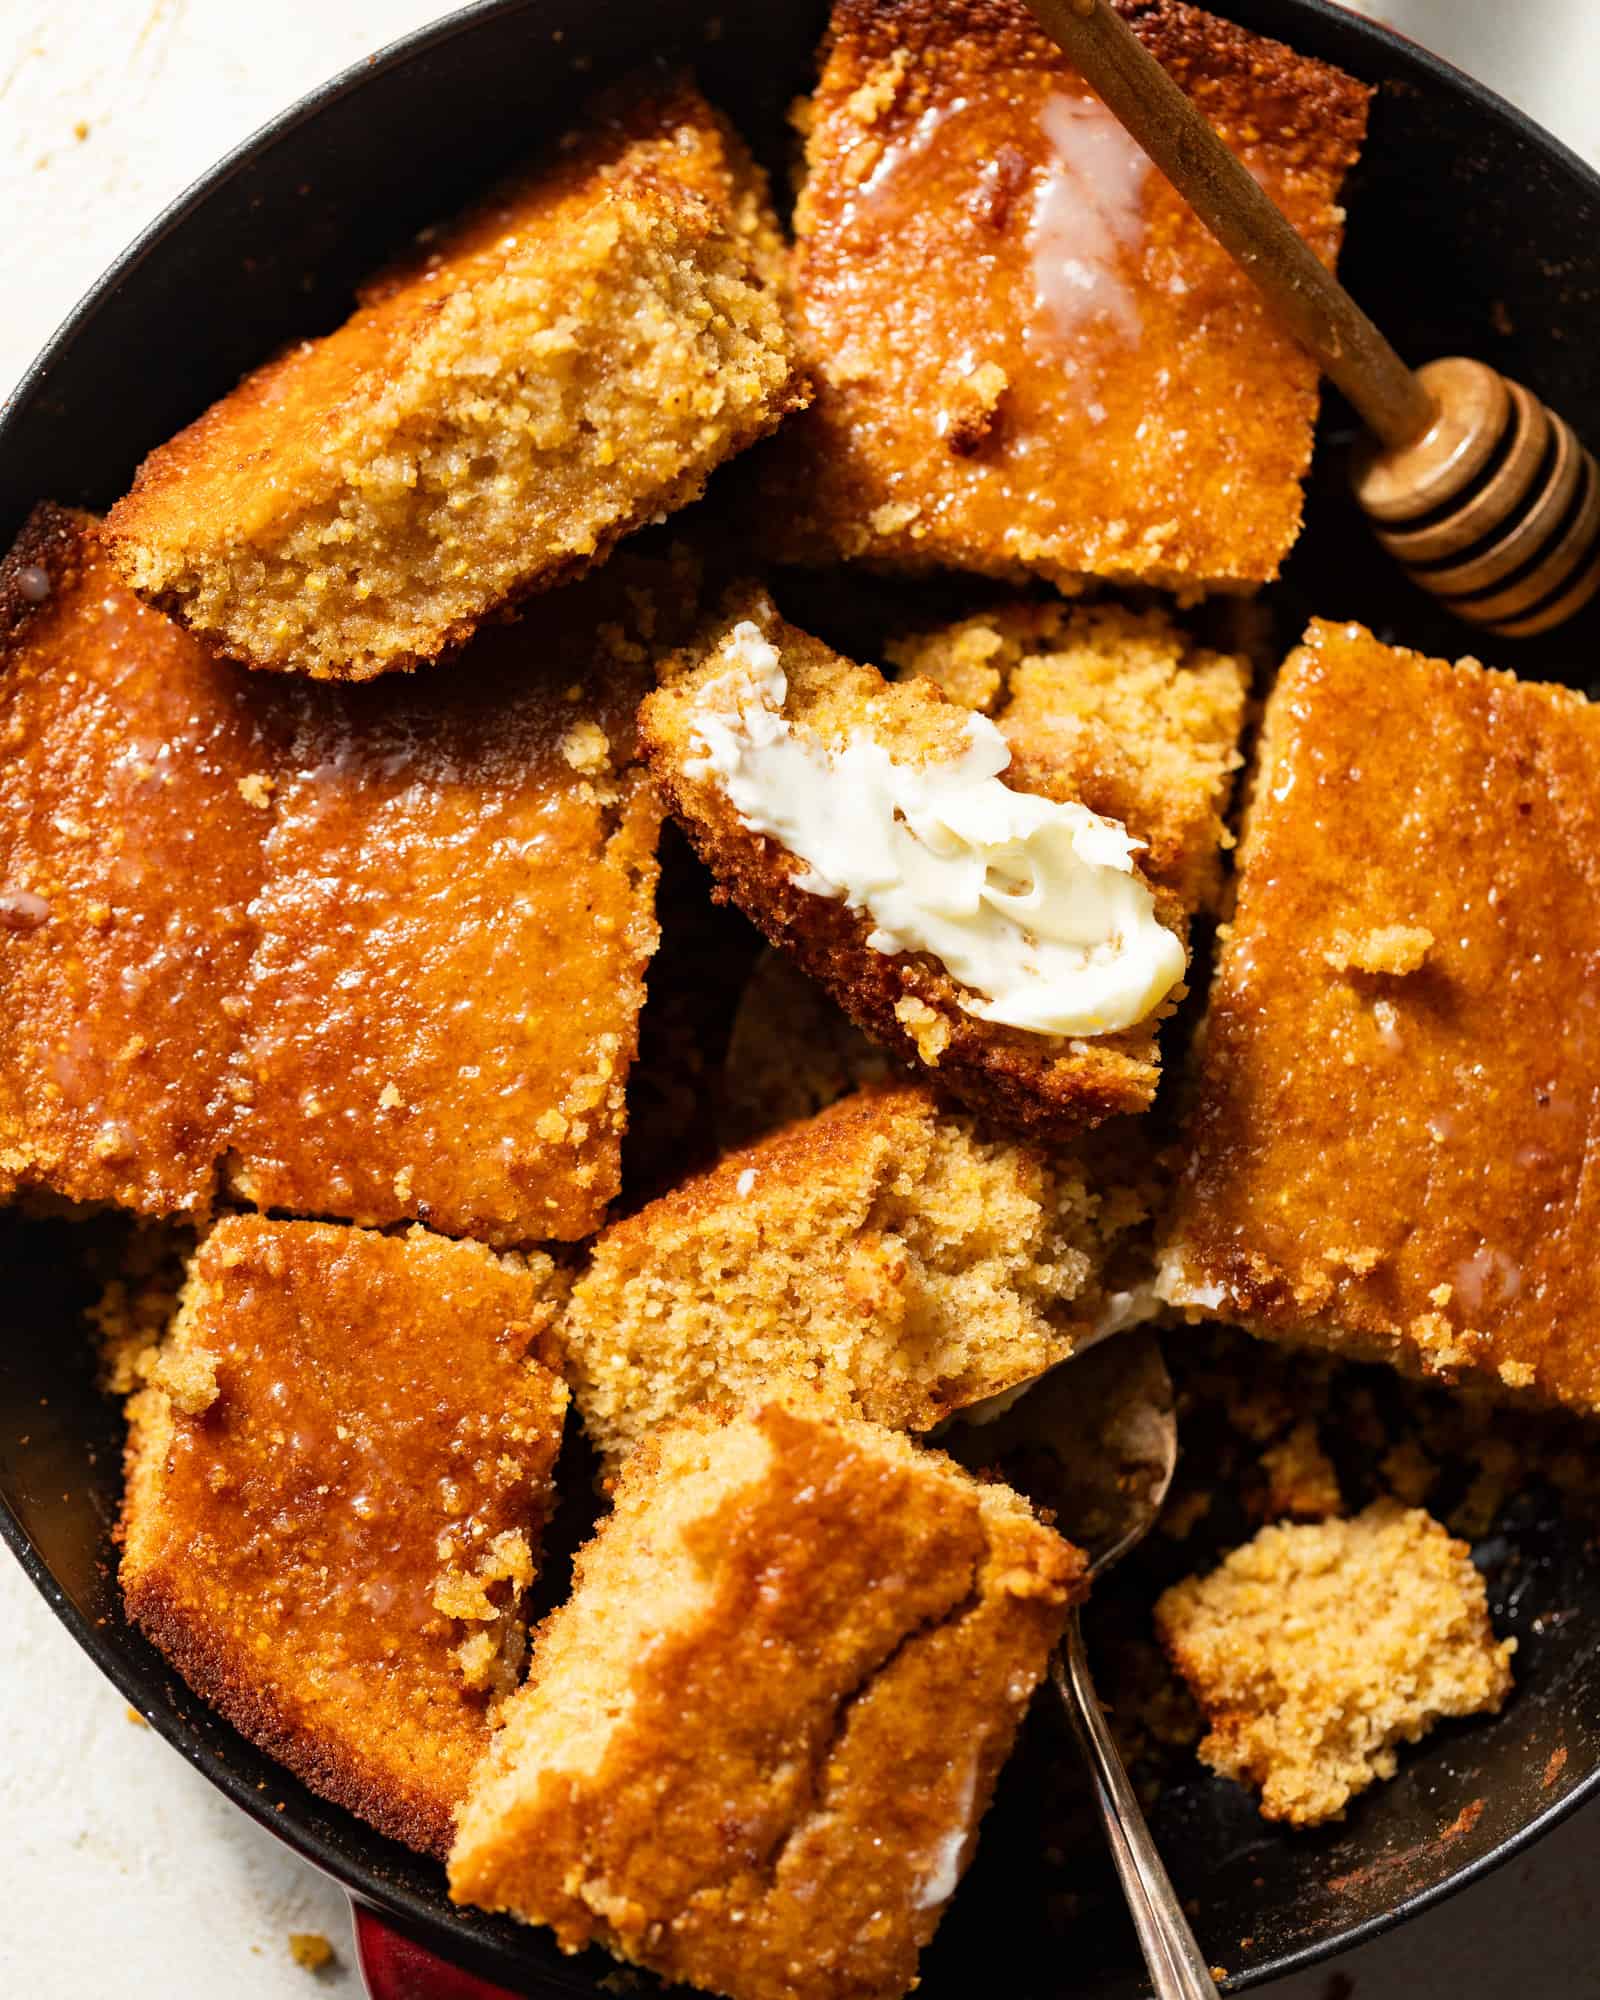 Sweet Cornbread (So Moist & Tender) w/ Honey & Buttermilk Southern